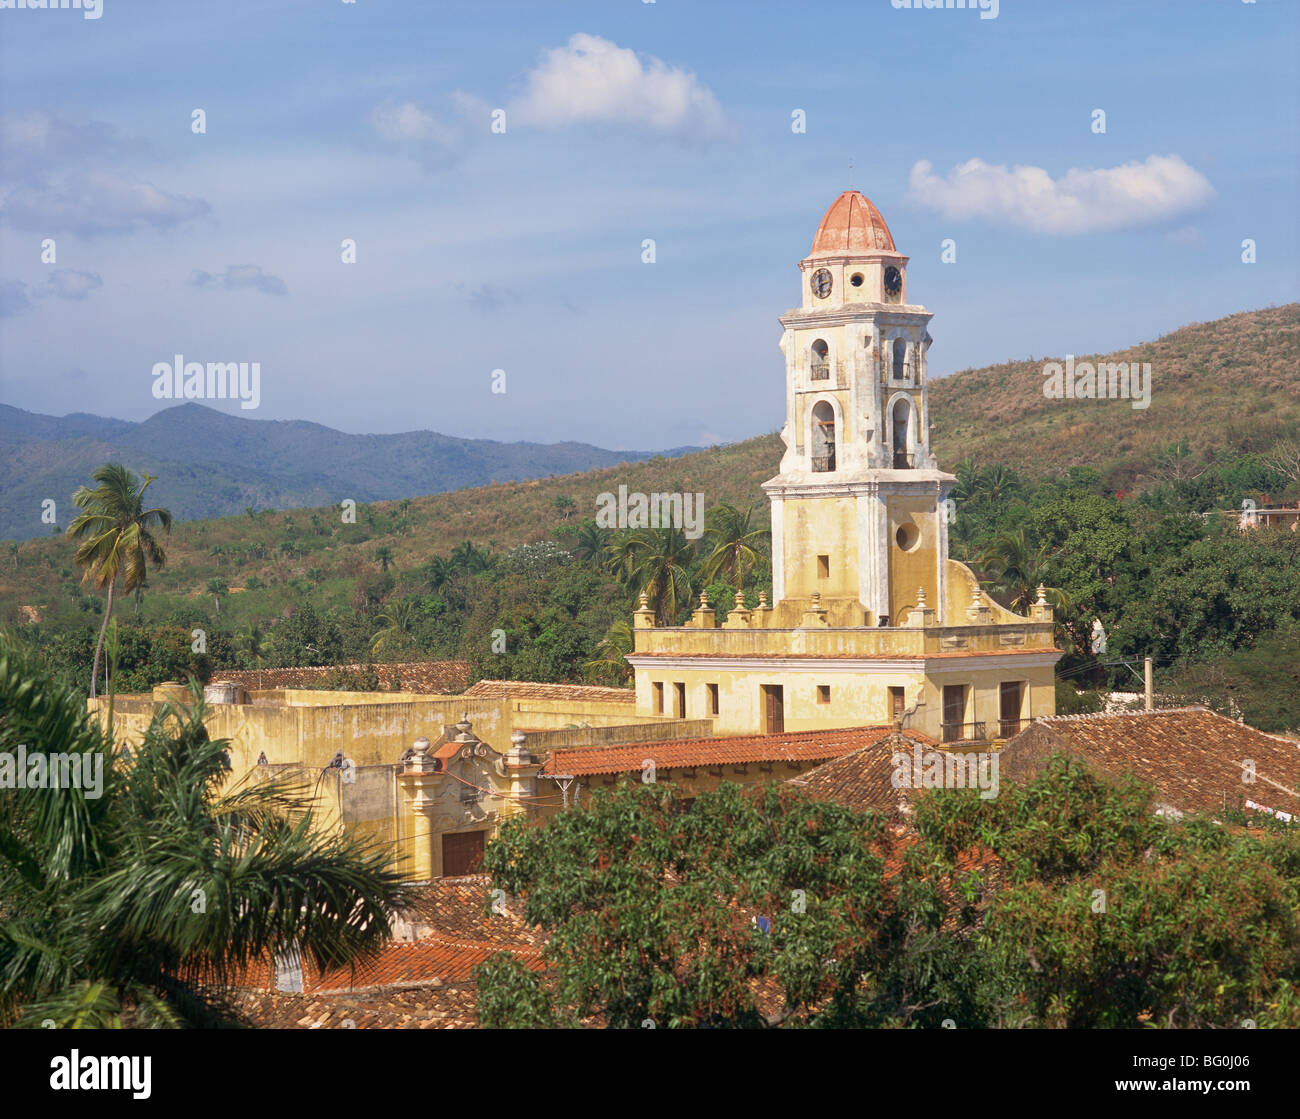 Turm der Kirche und Kloster des Heiligen Franziskus von Assisi, Trinidad, UNESCO World Heritage Site, Kuba, West Indies Stockfoto